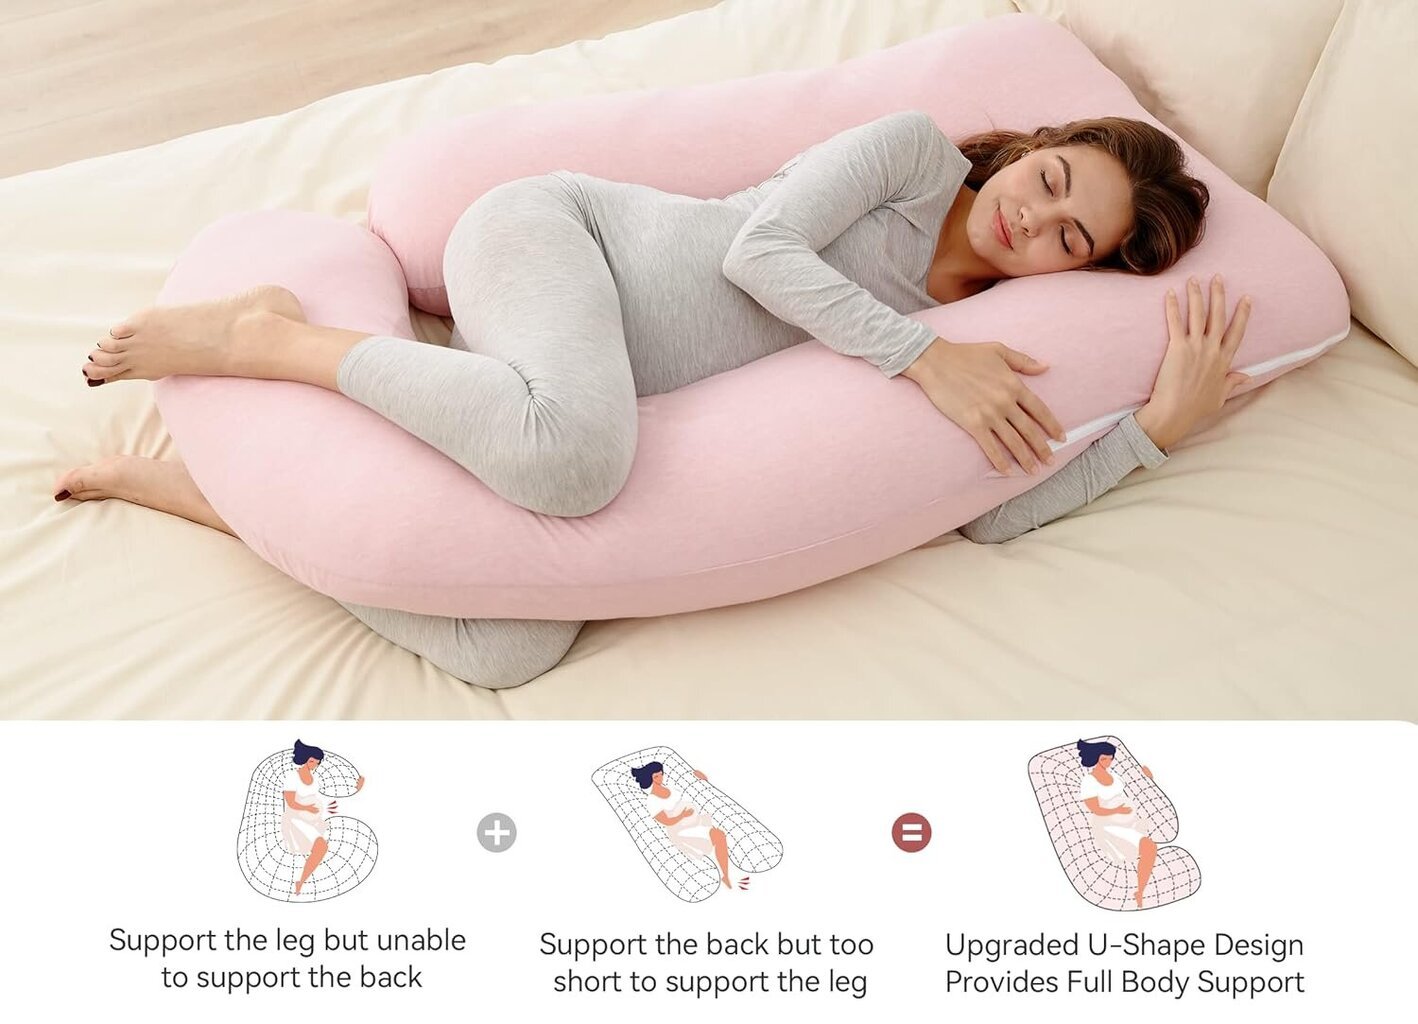 Multifunkcinė nėščiosios pagalvė Momcozy Jersey Cotton, rožinė kaina ir informacija | Maitinimo pagalvės | pigu.lt